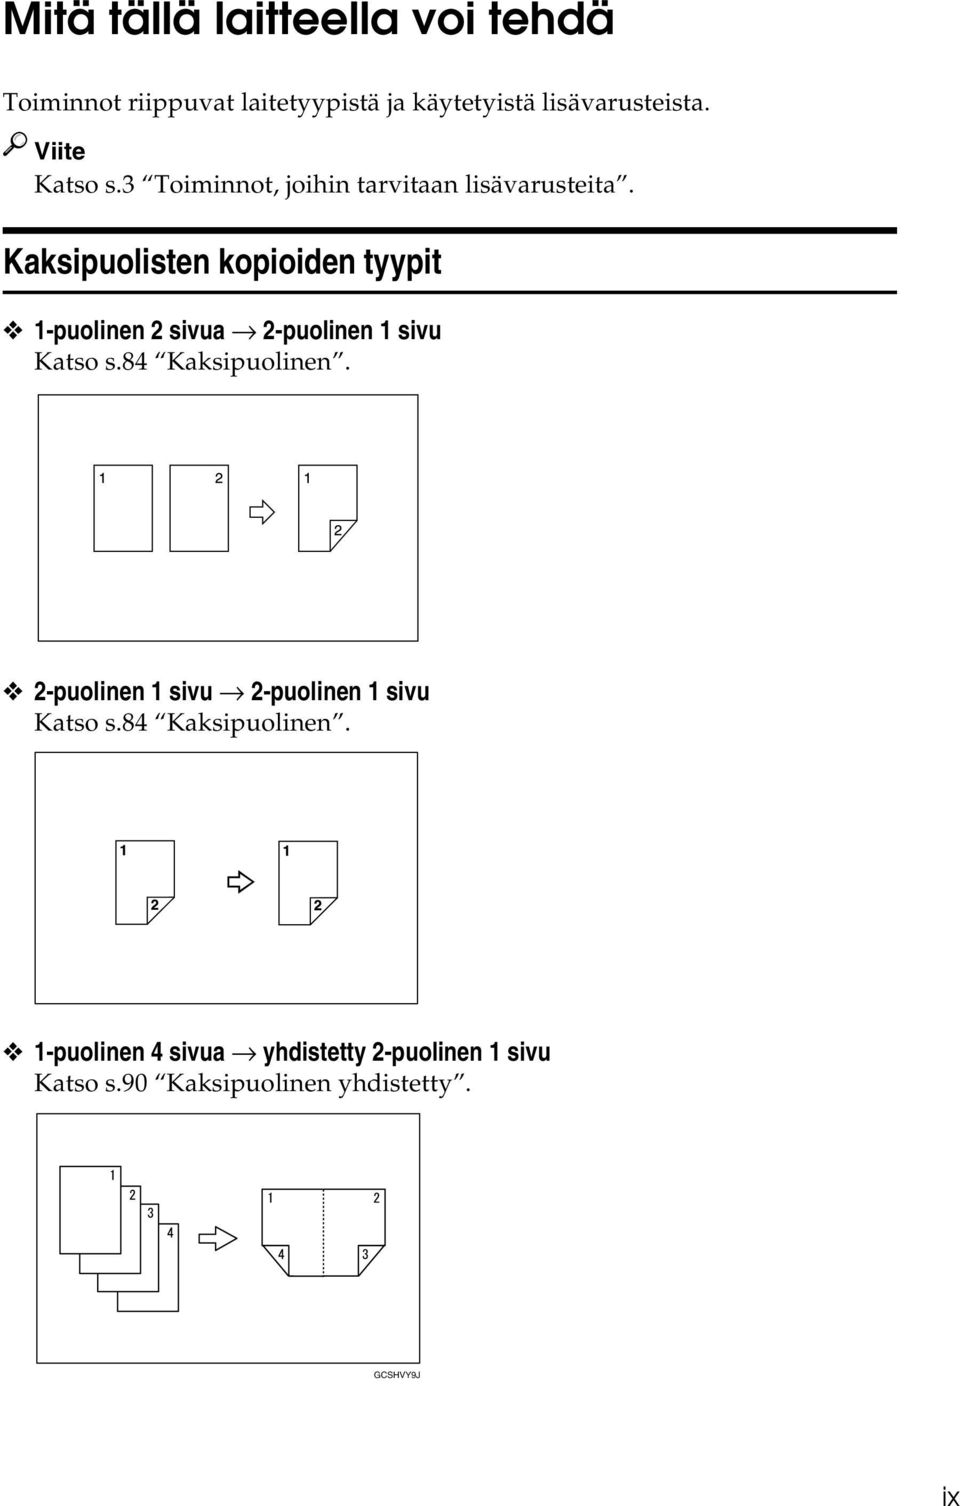 Kaksipuolisten kopioiden tyypit 1-puolinen sivua -puolinen 1 sivu Katso s.84 Kaksipuolinen.